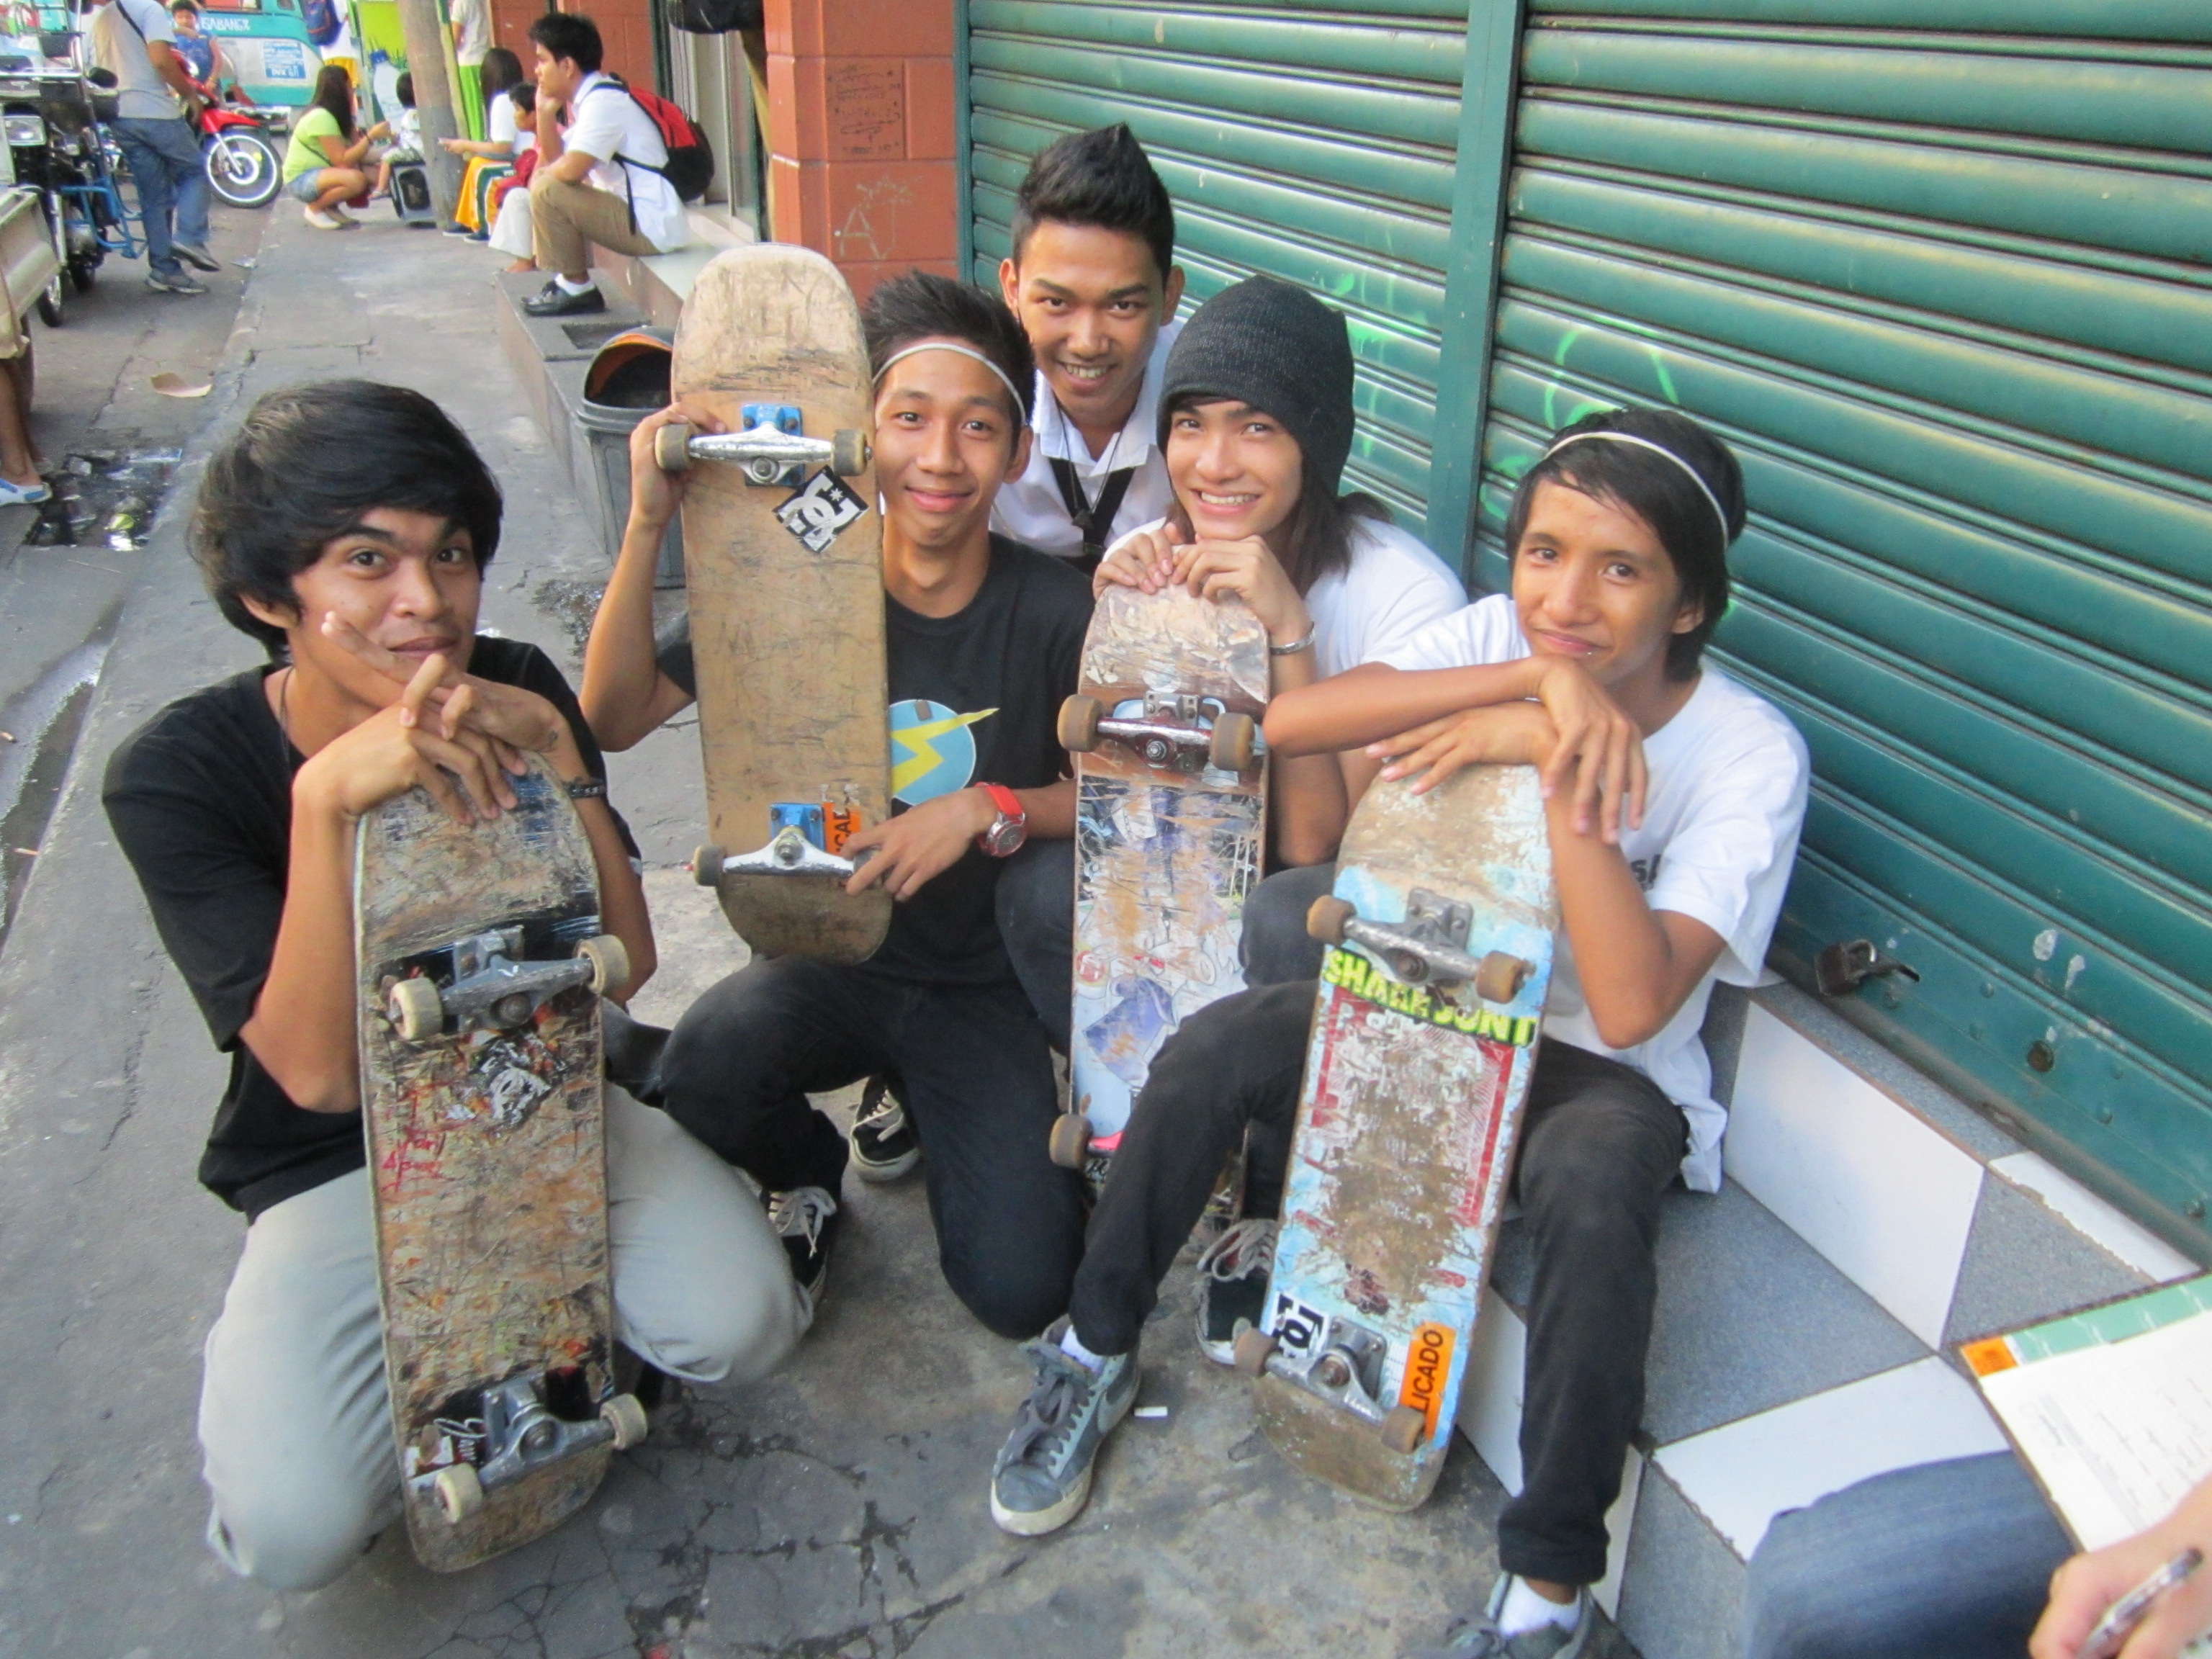 Skateboarding in Lucena City